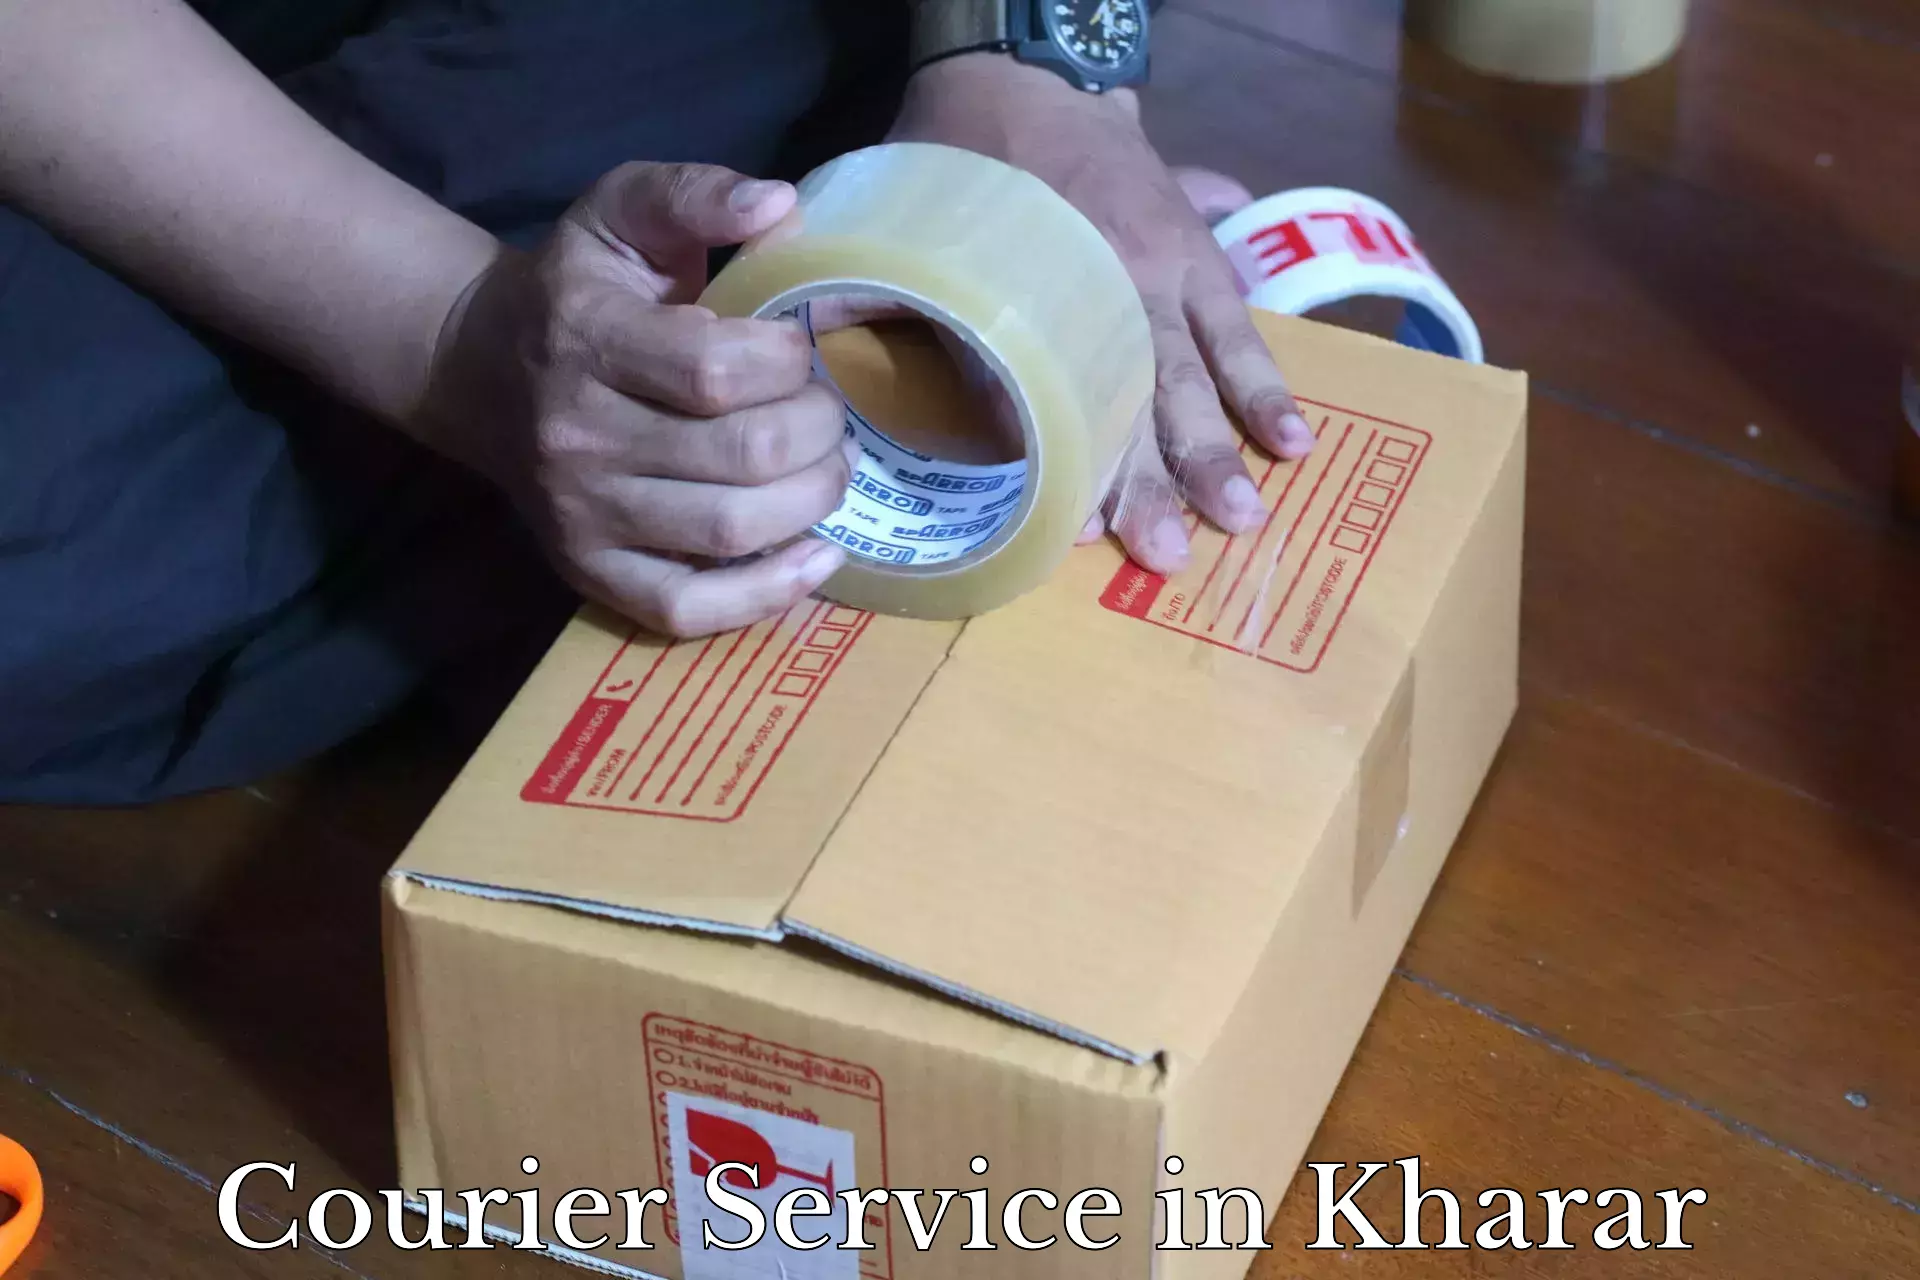 Innovative logistics solutions in Kharar